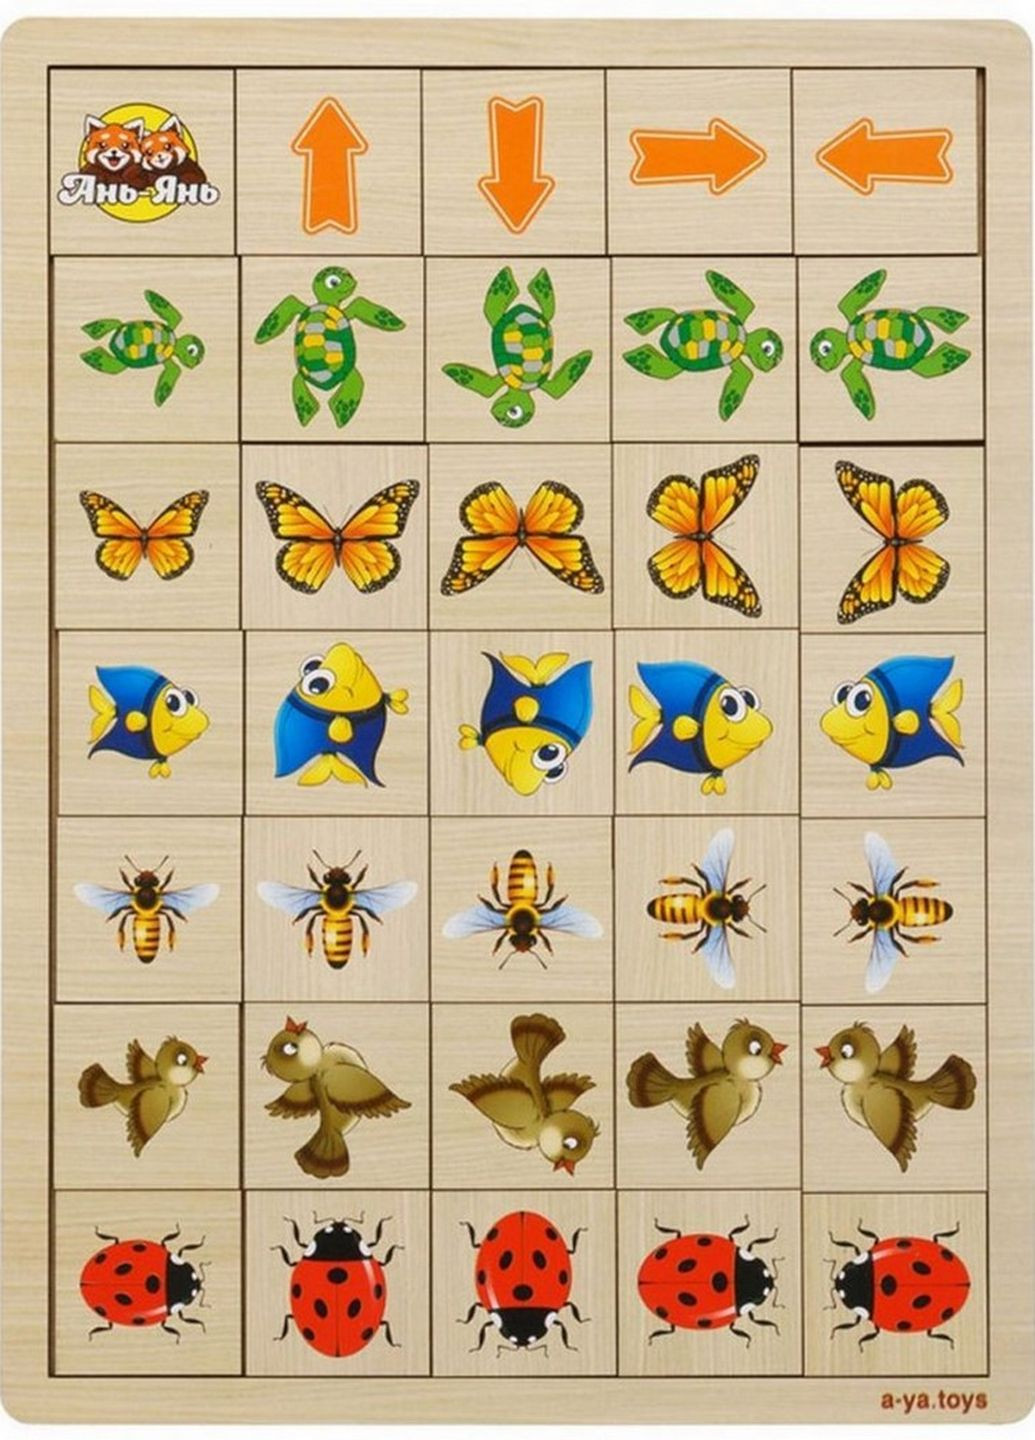 Деревянная настольная игра "Укажите направление - 2" (ПСФ007) PSF007 пазл-сортер Ubumblebees (262085547)